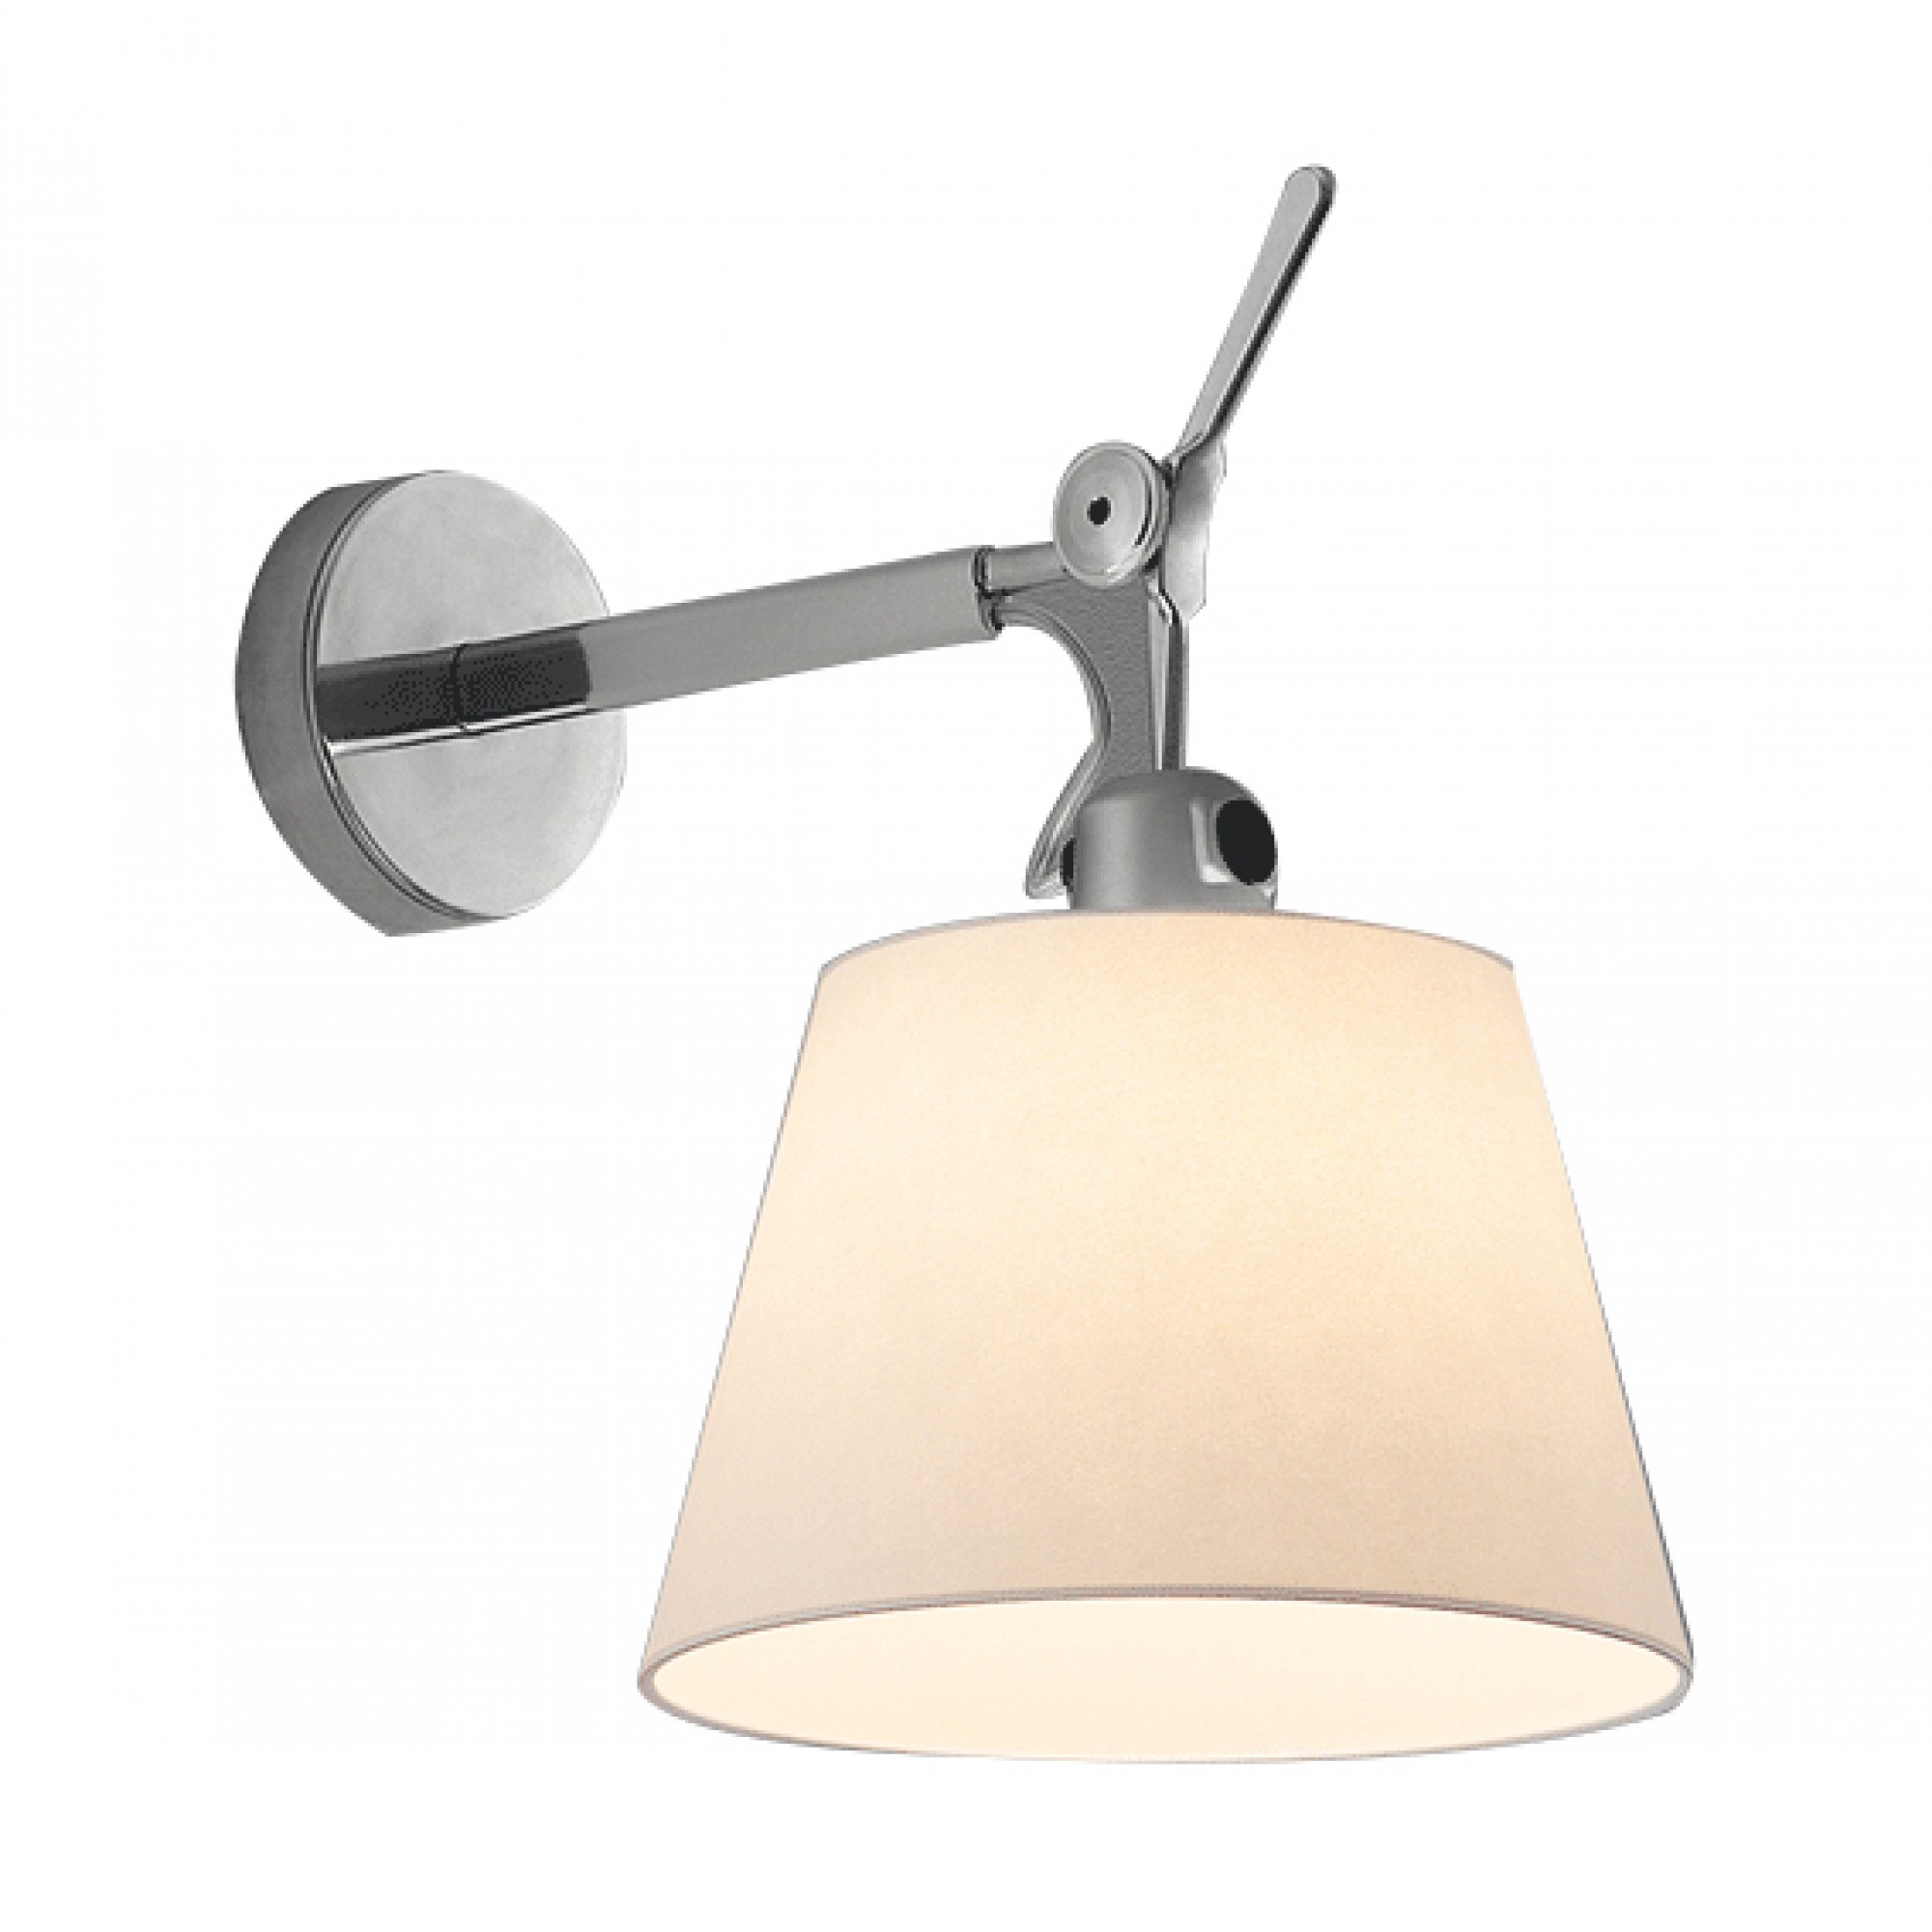 TOLOMEO PARETE DIFFUSORE 32 WALL LAMP -  -  ARTEMIDE